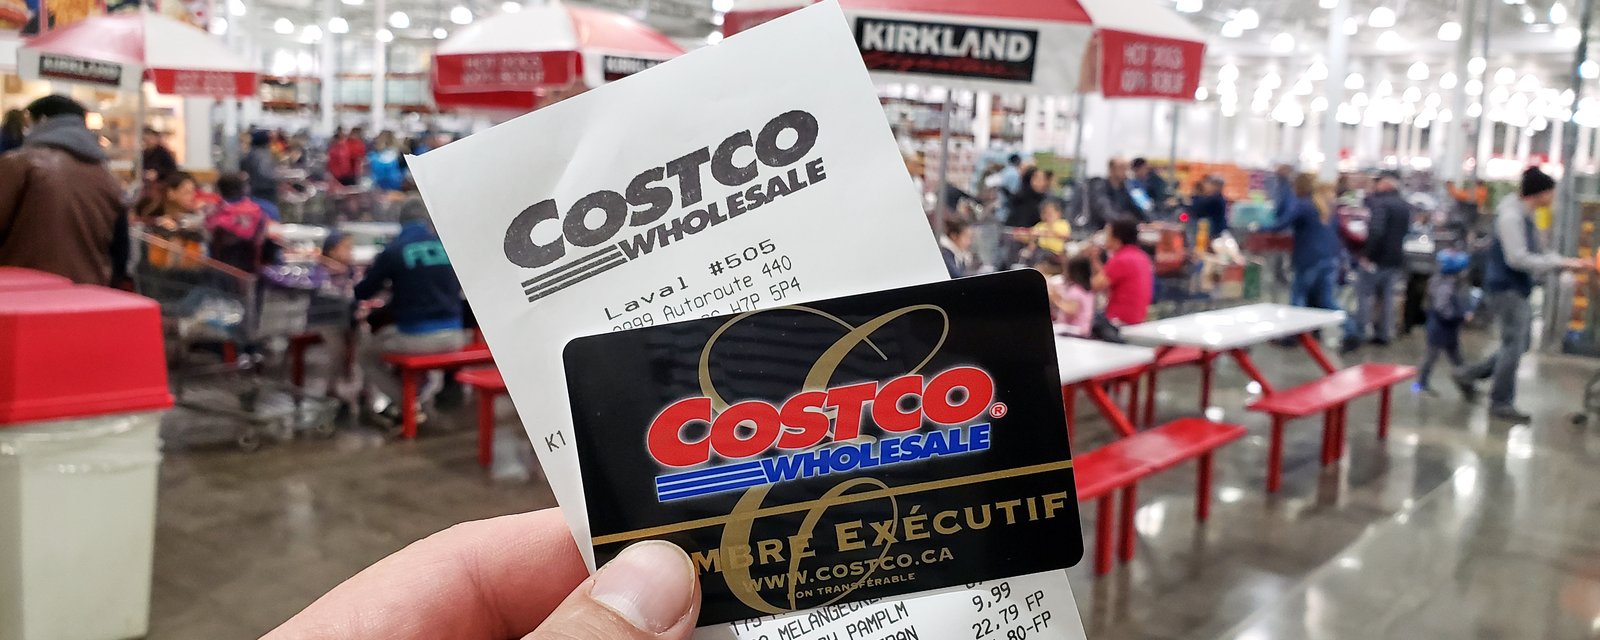 Beaucoup de gens ignorent ce que signifient les prix terminant par .97 au Costco